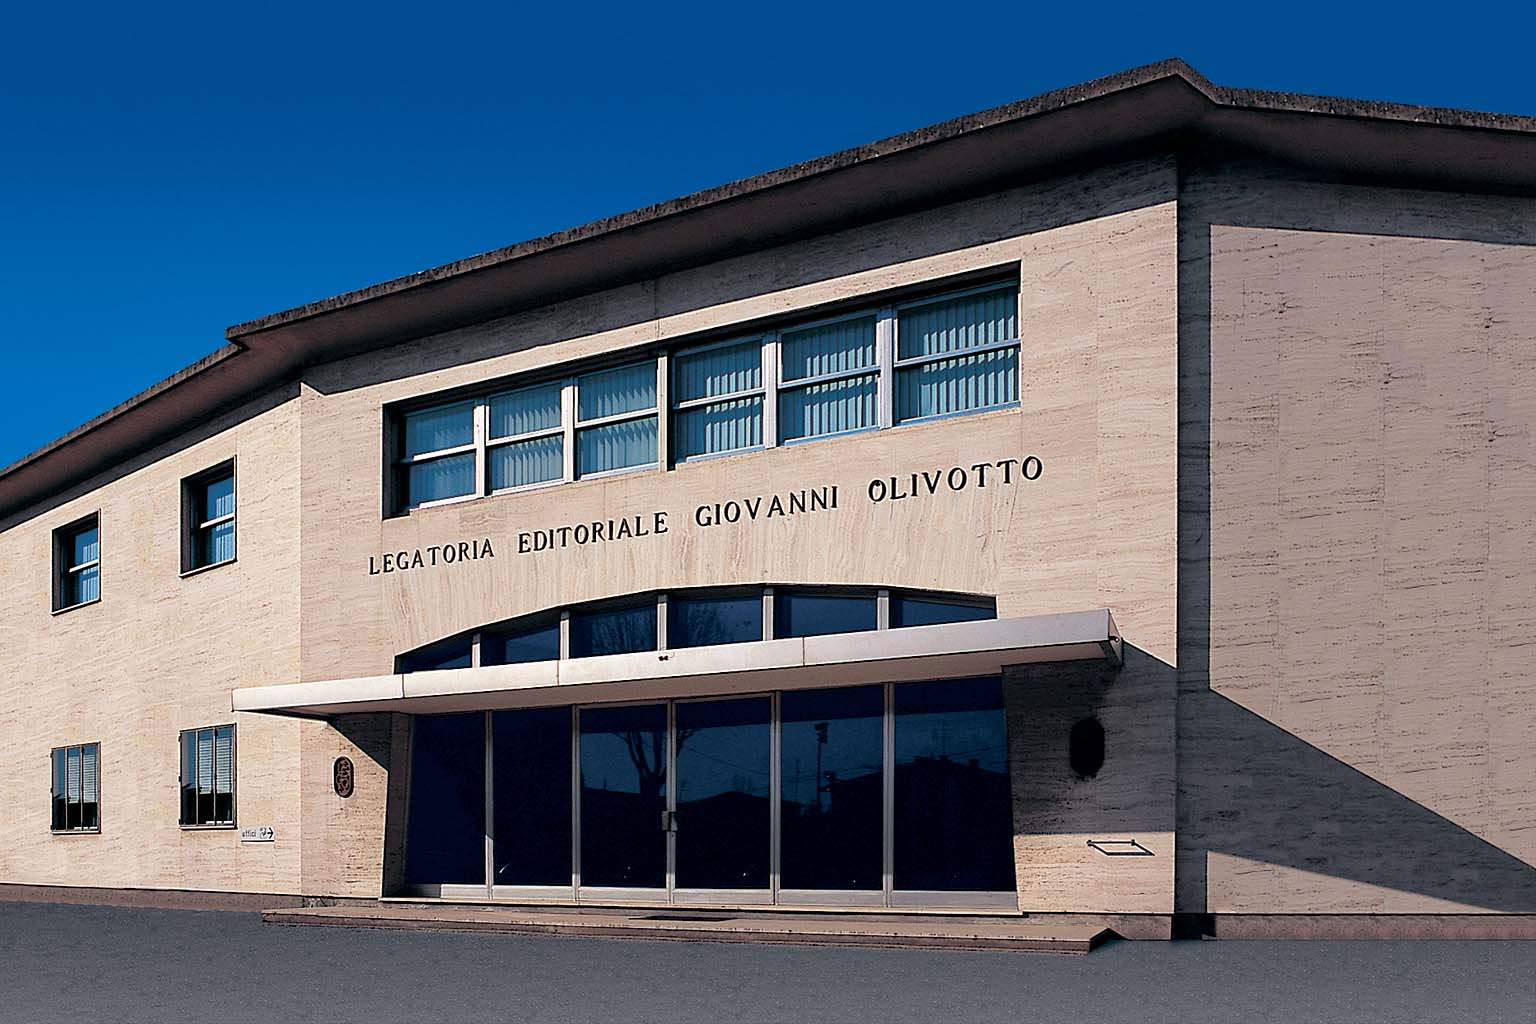 Ingresso sede L.E.G.O. di Vicenza | Legatoria Editoriale Giovanni Olivotto L.E.G.O. S.p.A. – https://www.legogroup.com